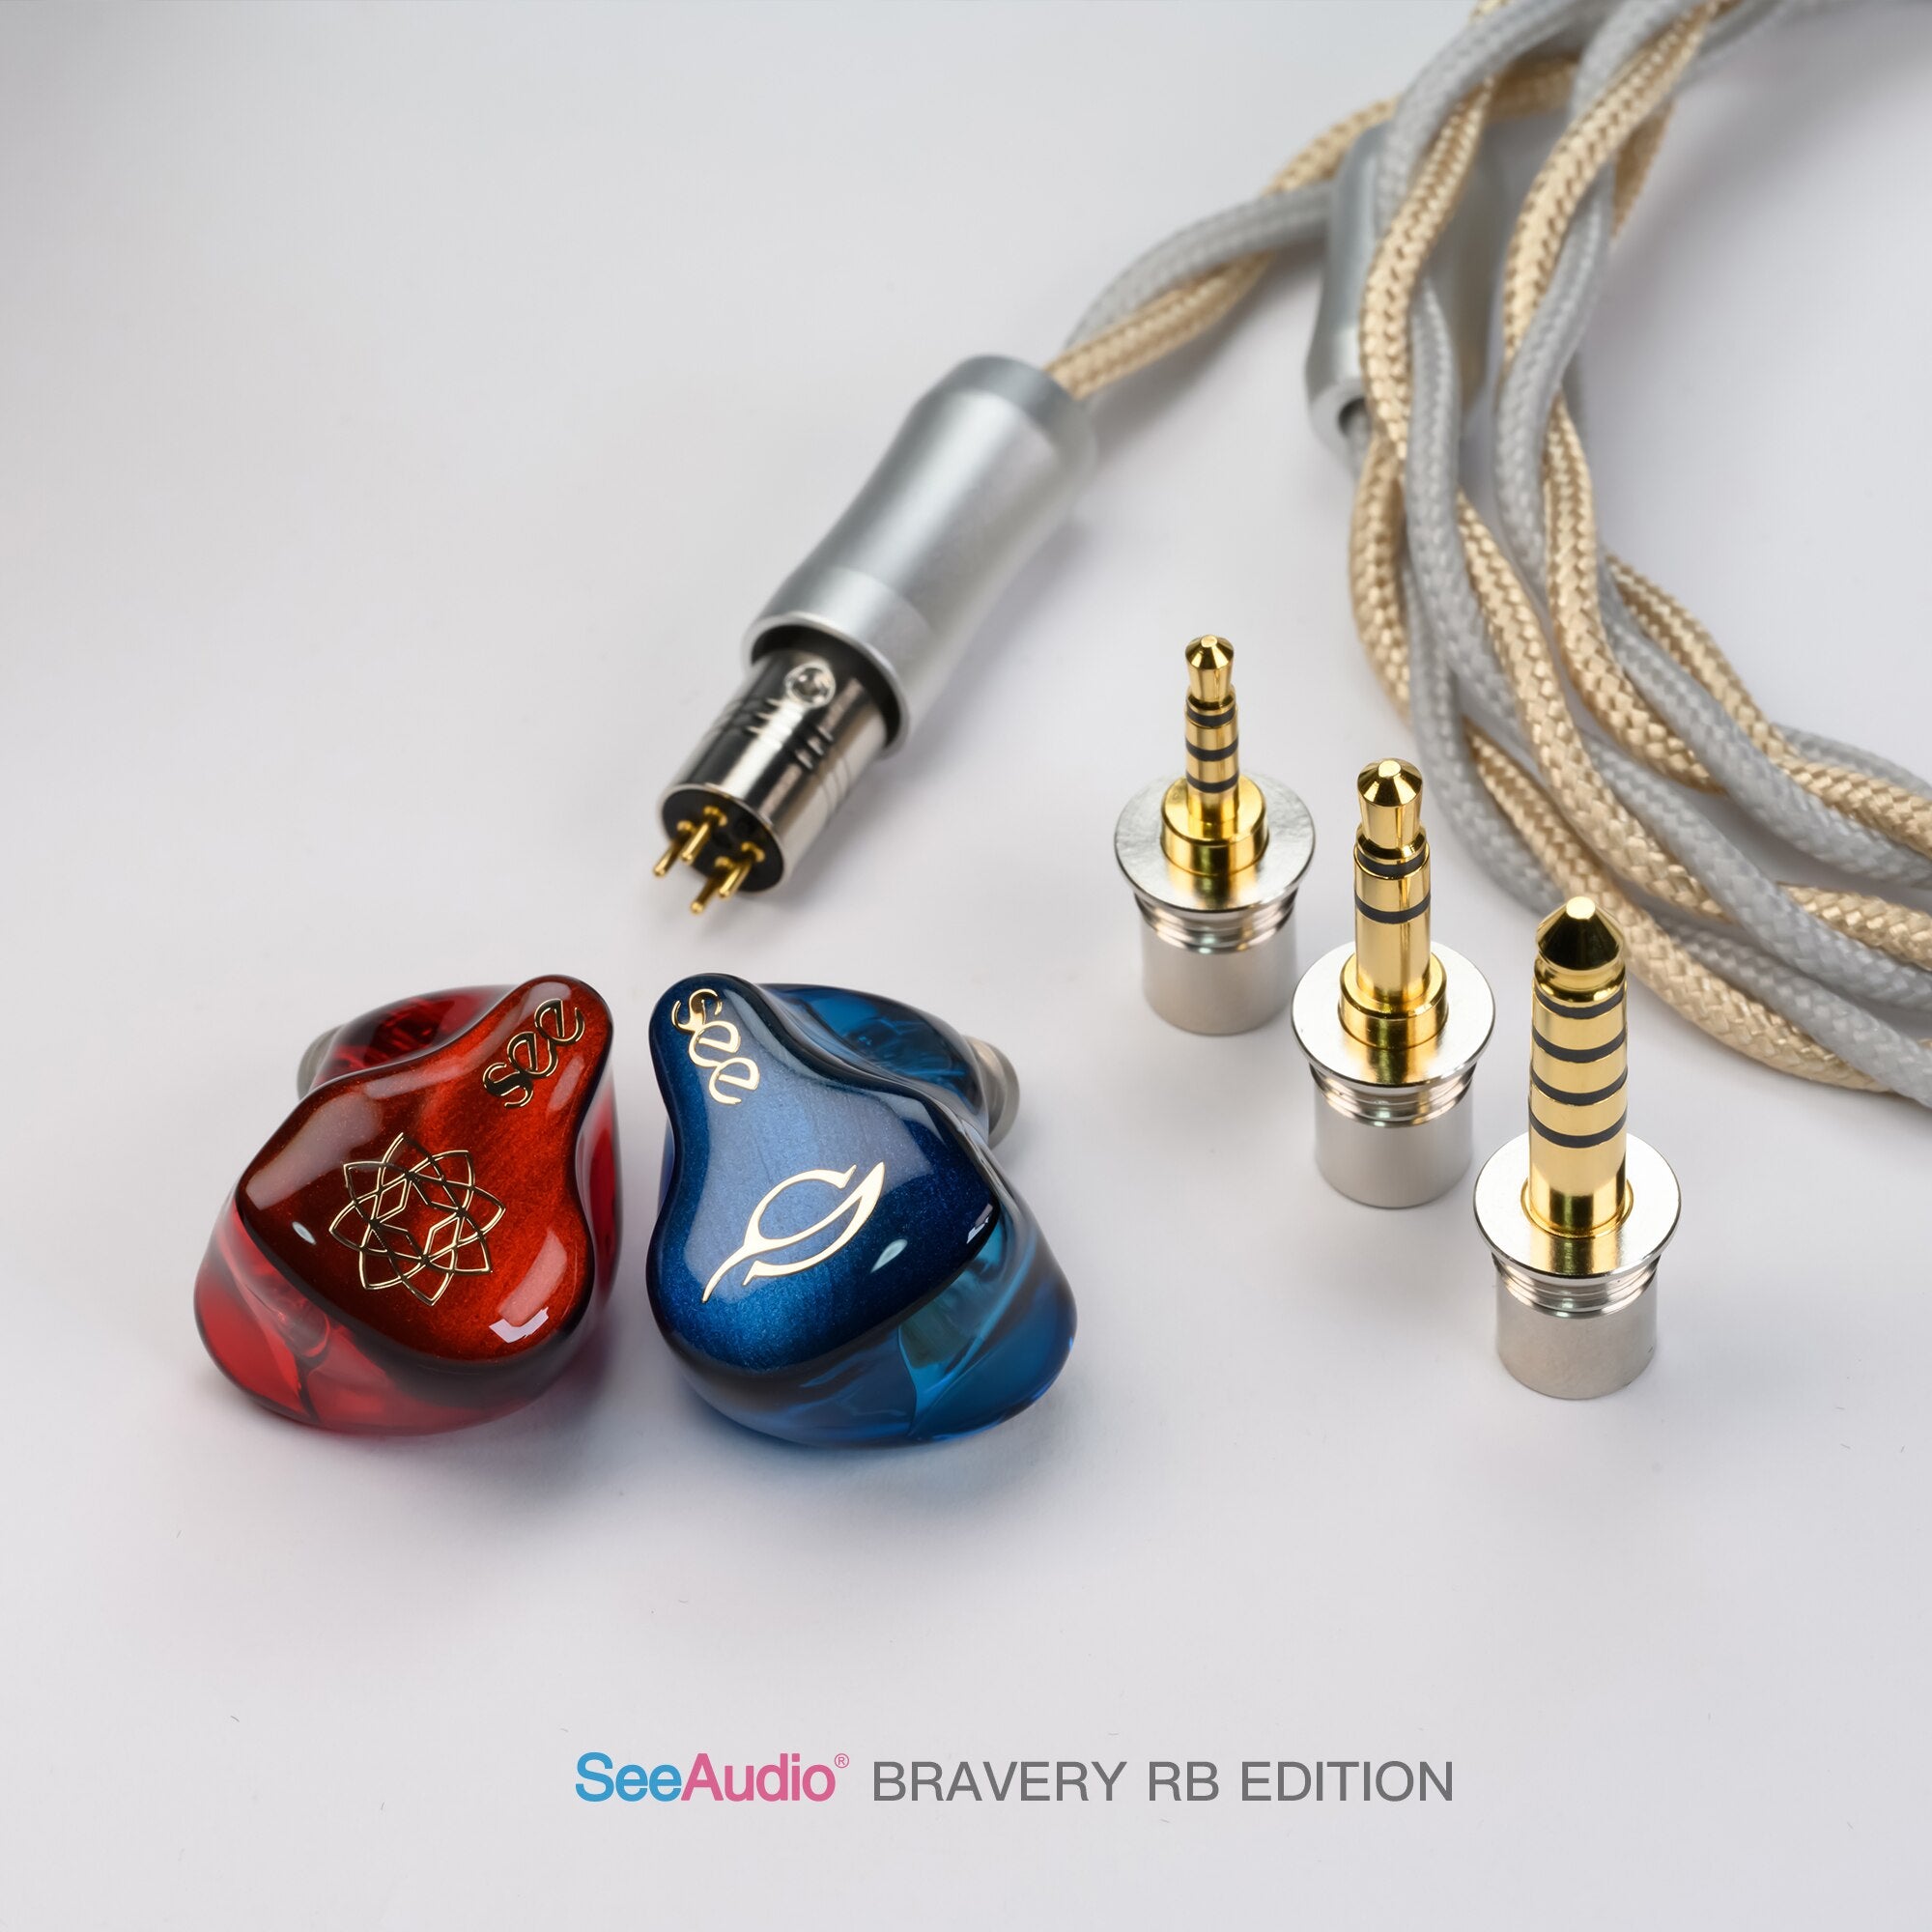 SeeAudio Bravery RB edition